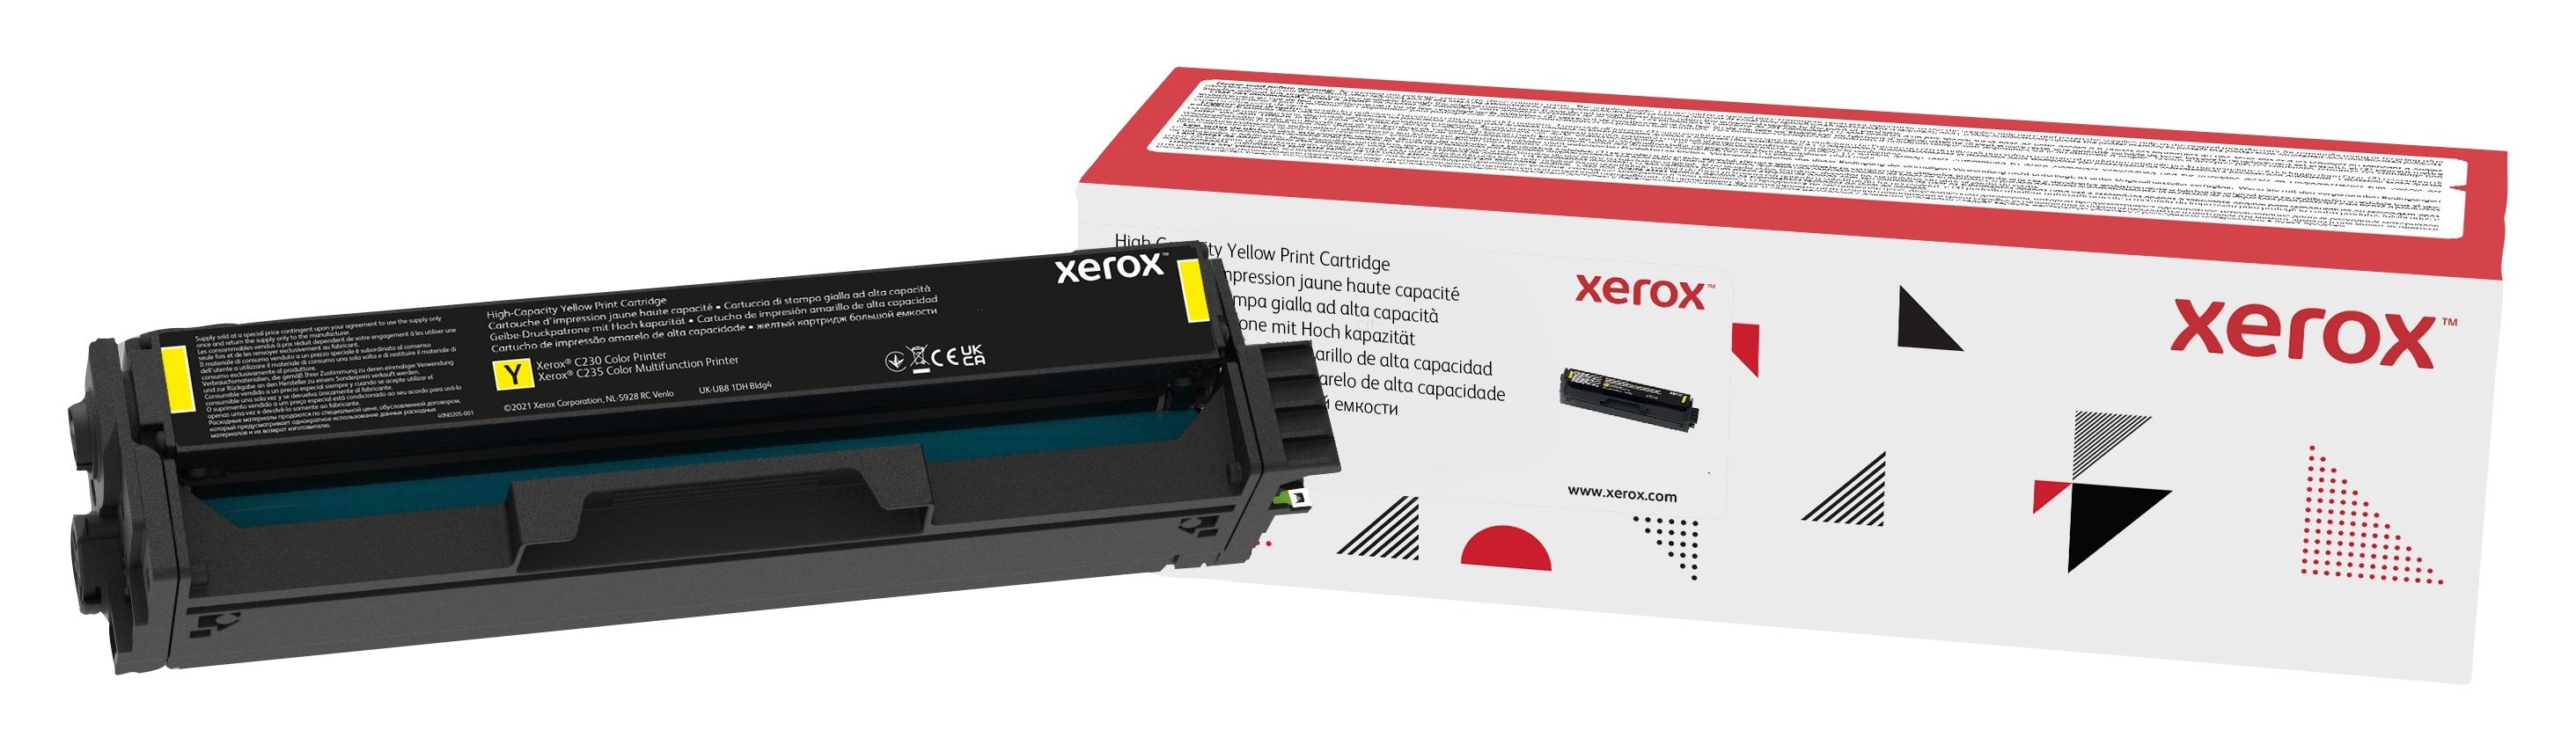 Xerox C230 / C235 Yellow High Capacity Toner Cartridge (2,500 pages)  006R04394 Genuine Xerox Supplies